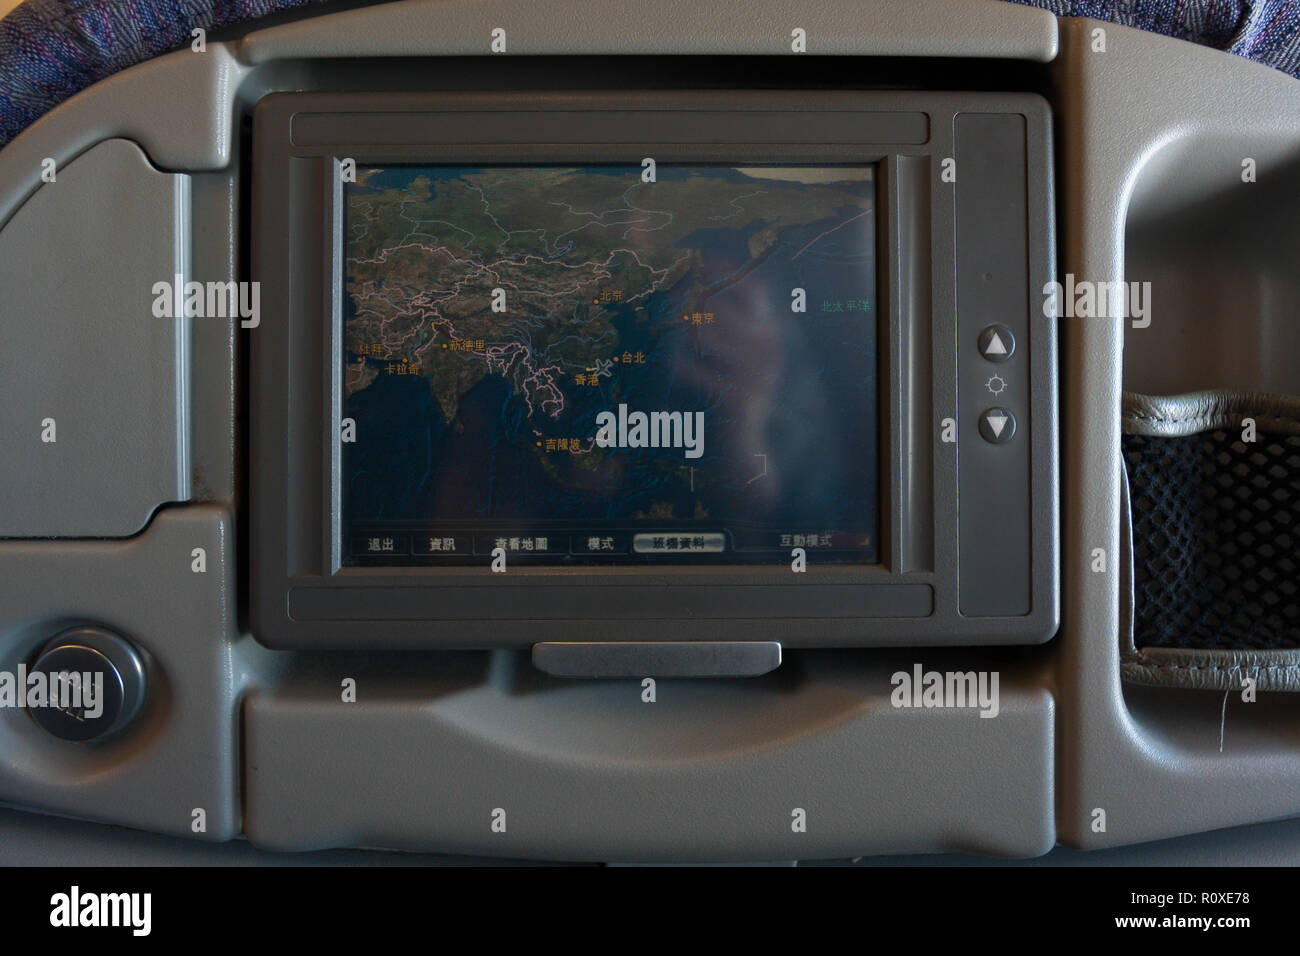 Plan de vol affichées sur un moniteur vidéo sur le siège d'un avion Airbus A330-300 de la compagnie China Airlines CI-917, classe économique, vol de Taiwan Banque D'Images